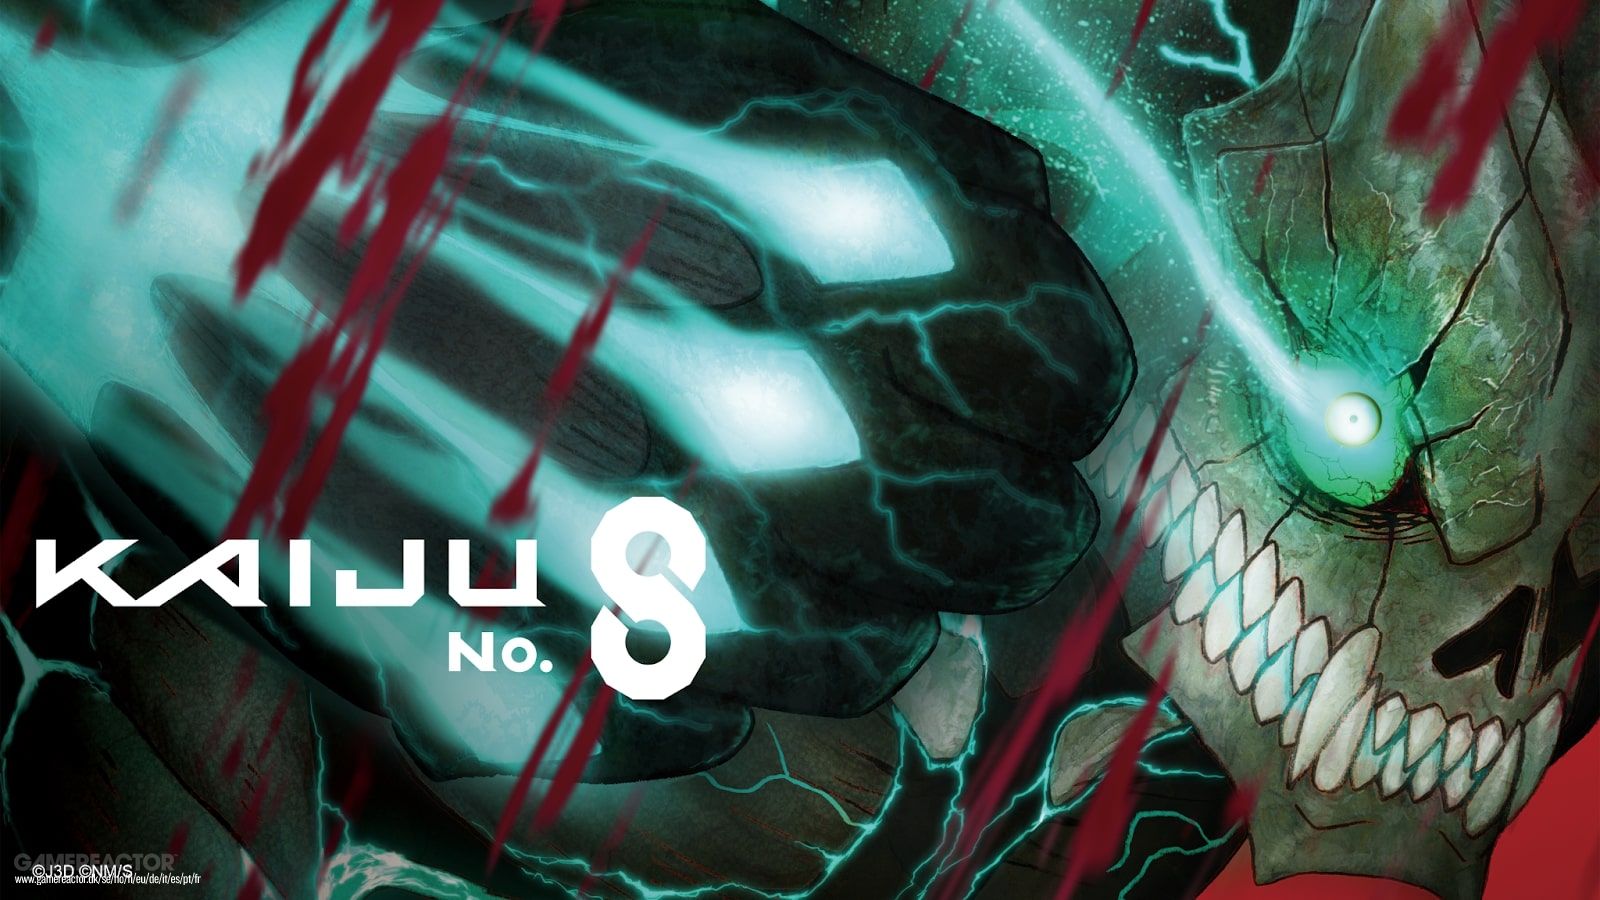 Si buscas algo distinto a Godzilla y Kong, el anime de Kaiju No. 8 ya está disponible en Crunchyroll